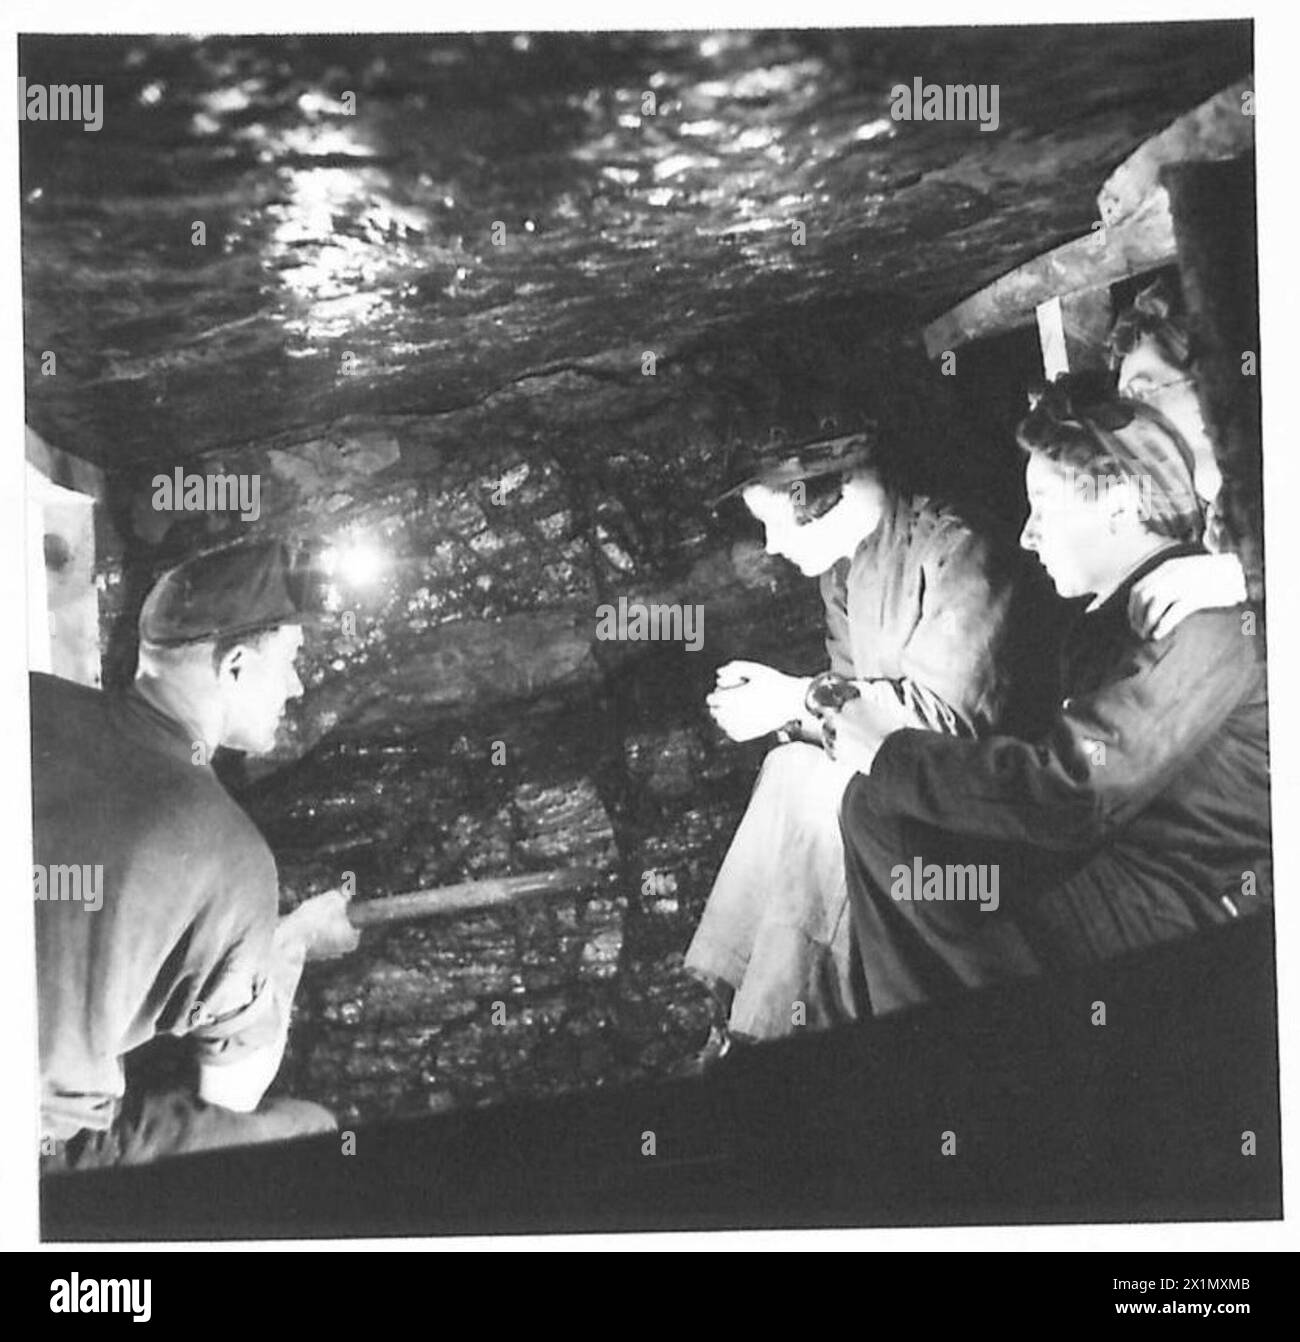 ATS-HILFSKRÄFTE BESUCHEN DIE SCHOTTISCHE KOHLEMINE - ATS-Hilfskräfte beobachten einen Bergarbeiter bei der Arbeit im Kohlegesicht der British Army Stockfoto